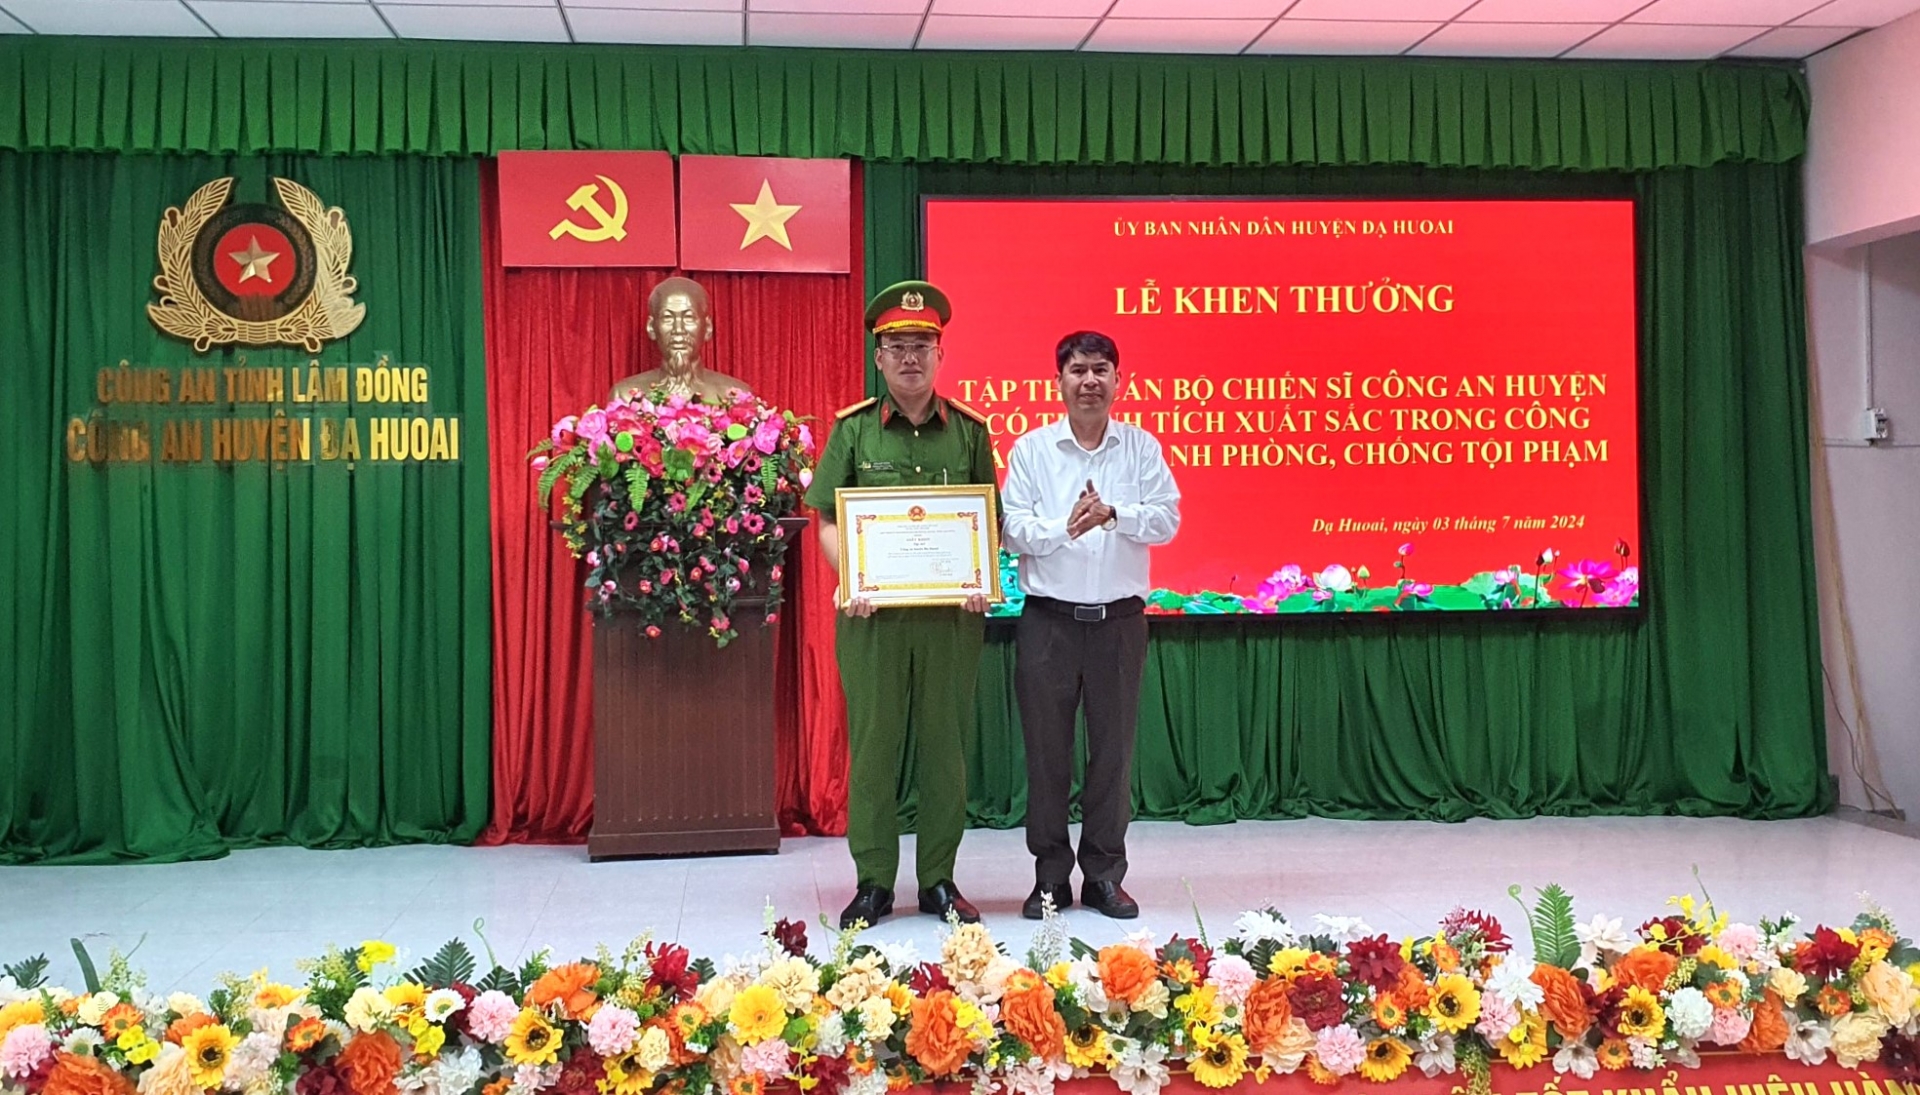 Chủ tịch UBND huyện Đạ Huoai Lê Bình Minh tặng giấy khen và thưởng nóng 10 triệu đồng cho Công an huyện Đạ Huoai đã có thành tích phá xanh vụ án giết người